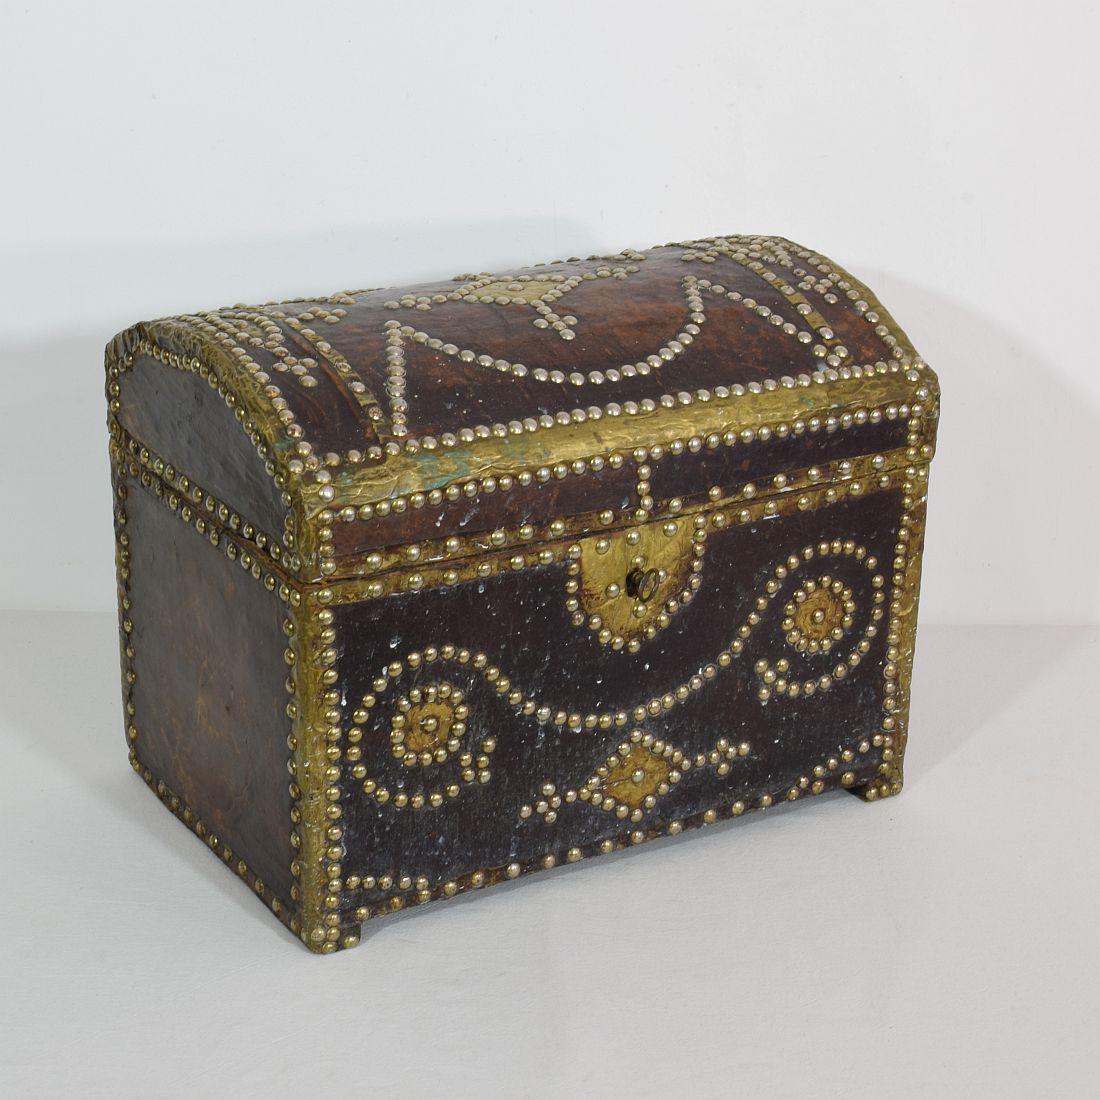 Schöne verwitterte Folk Art Box aus Holz und mit Leder bezogen. Funktionierendes Schloss und Schlüssel.
Frankreich, um 1850
Verwittert, kleine Schäden.